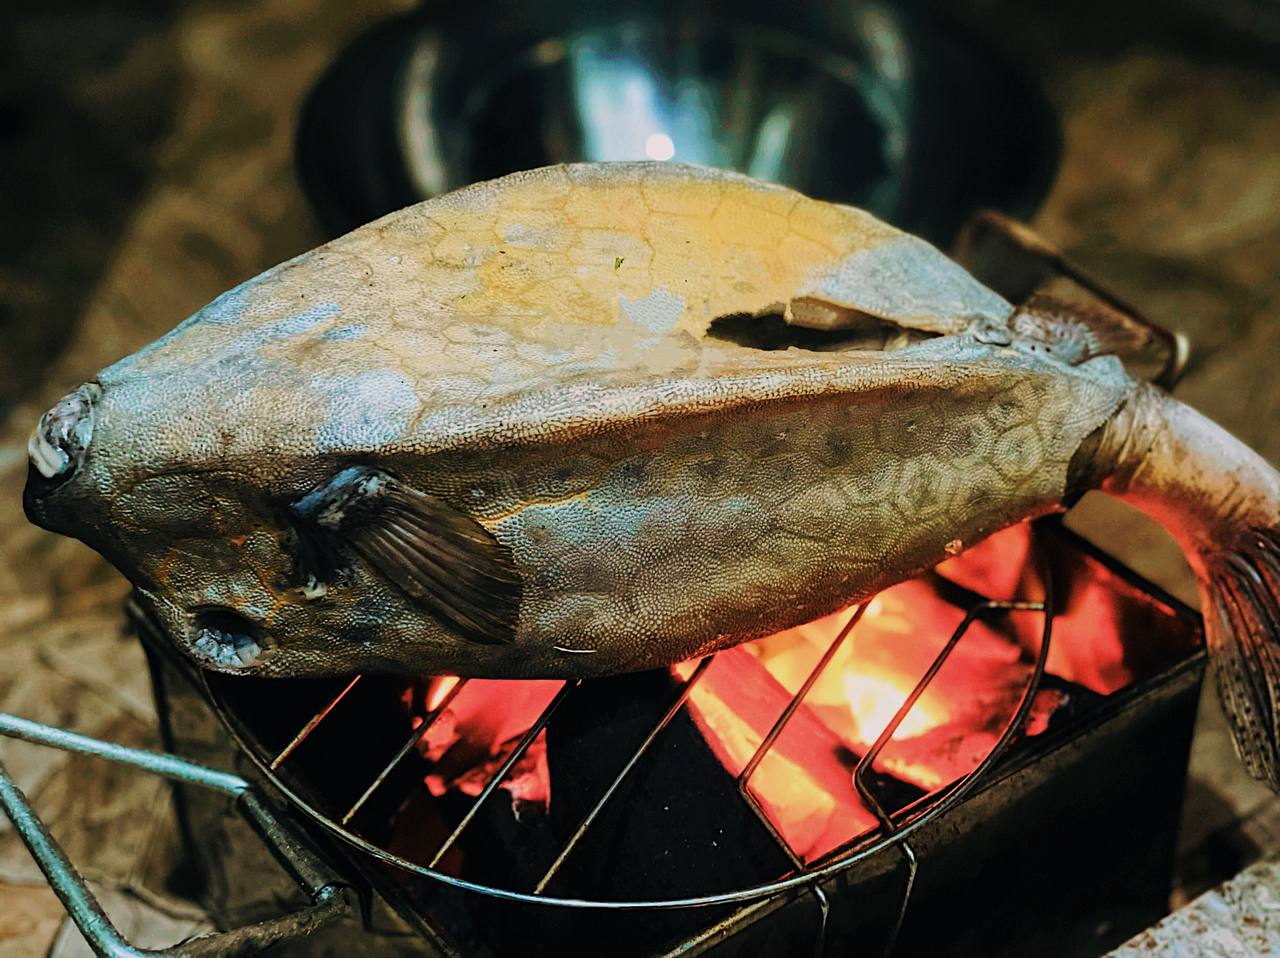 Cá bò hòm nướng - Thớ cá trắng muốt, dai ngọt ẩn sau lớp vỏ gai cứng làm nên đặc sản trác tuyệt - Ảnh 4.